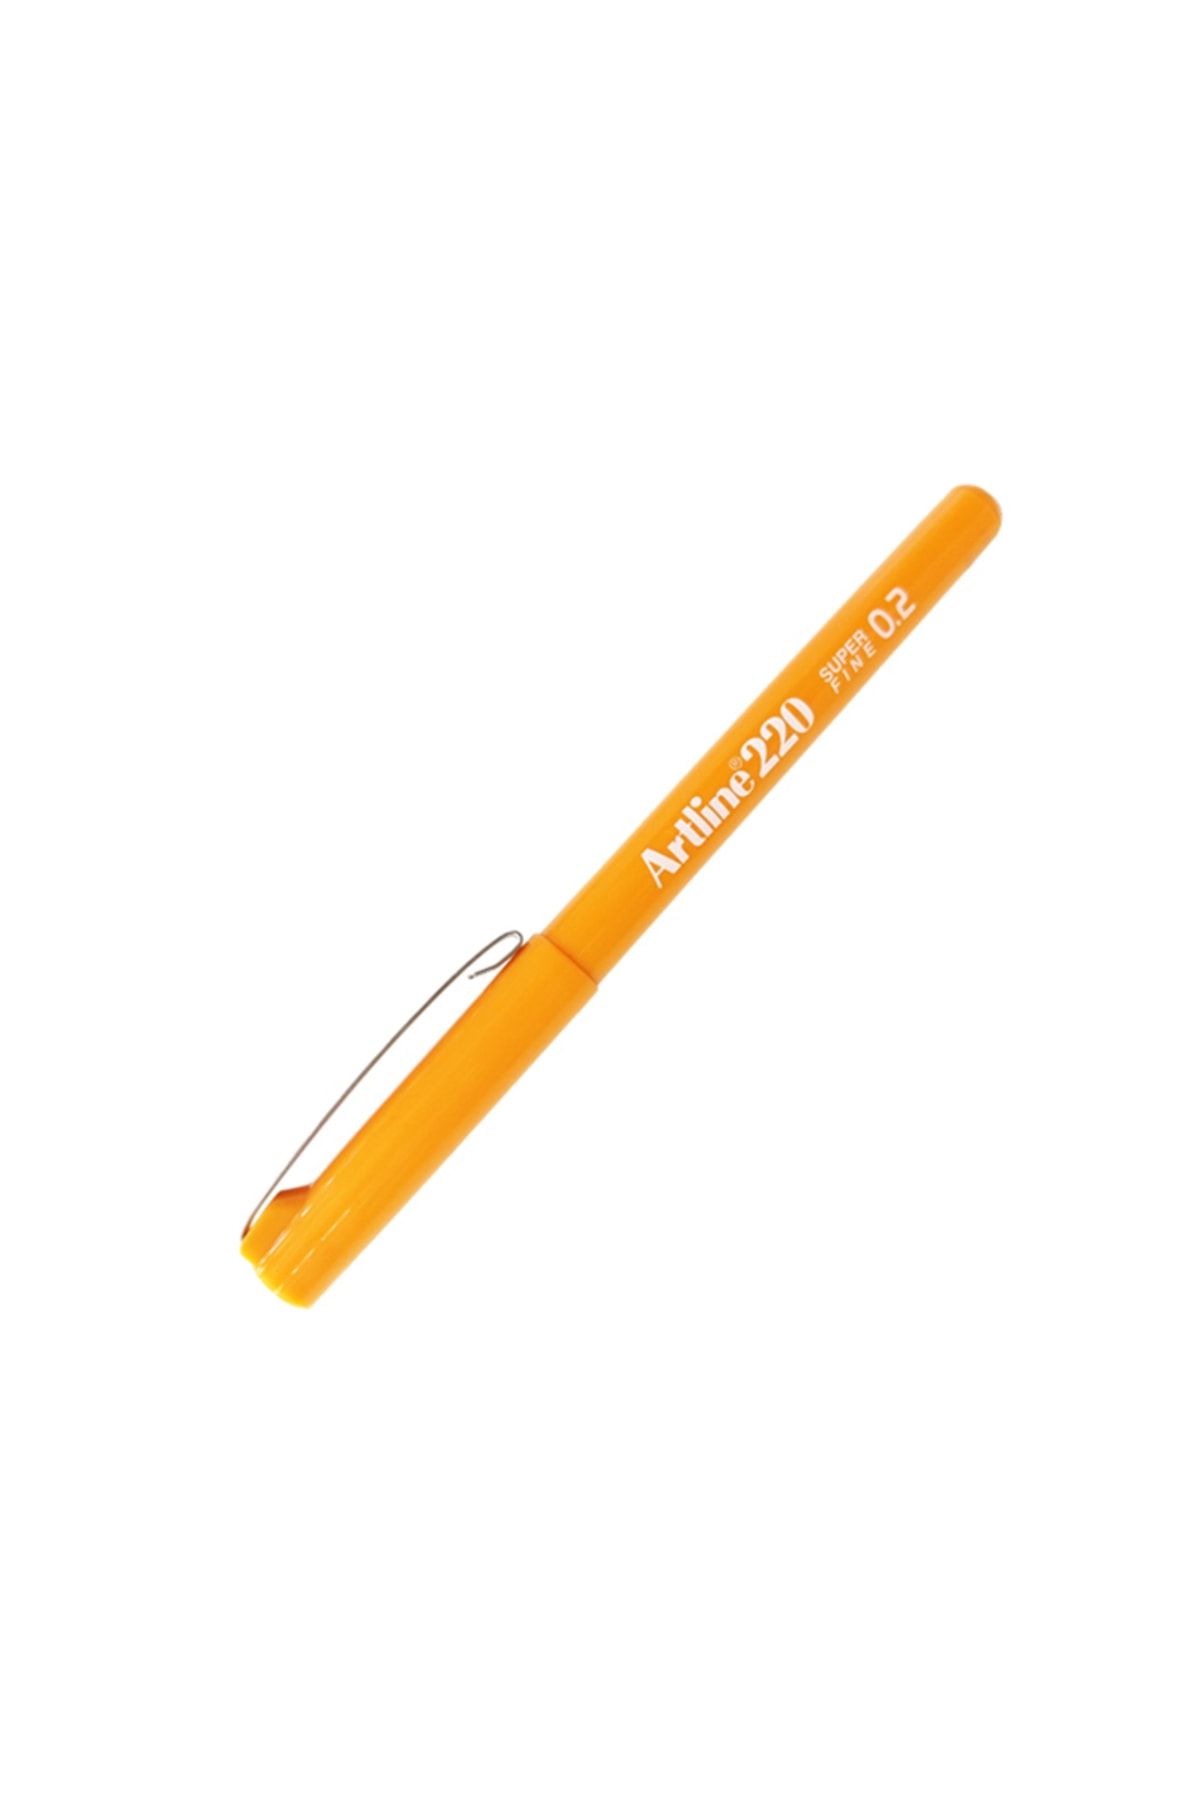 artline 220 Fineliner Ince Uçlu Yazı Ve Çizim Kalemi 0,2mm Turuncu